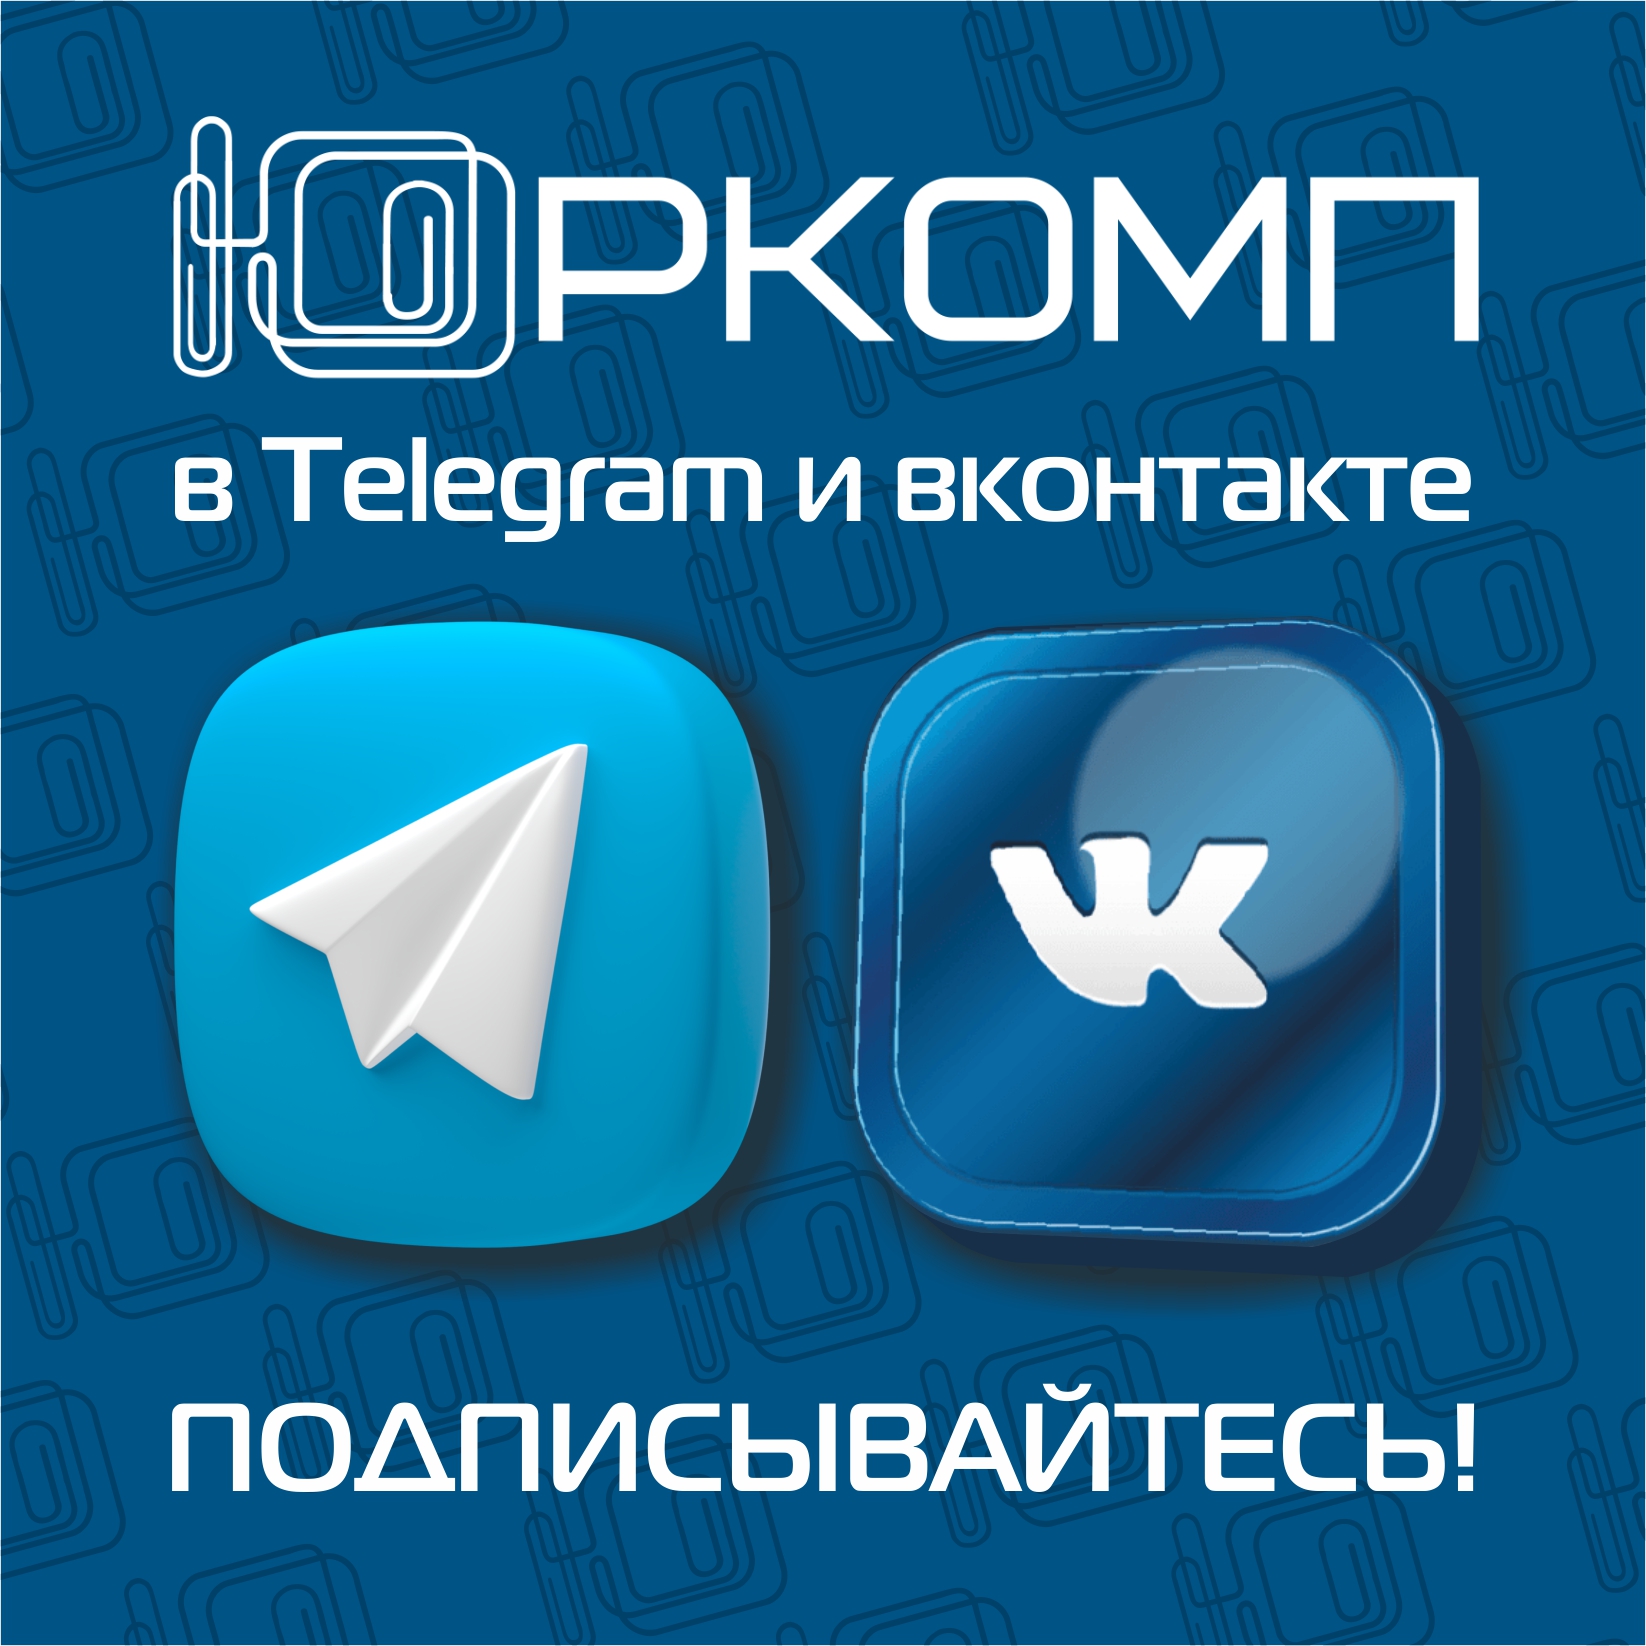 Новости вконтакте в телеграмм (119) фото